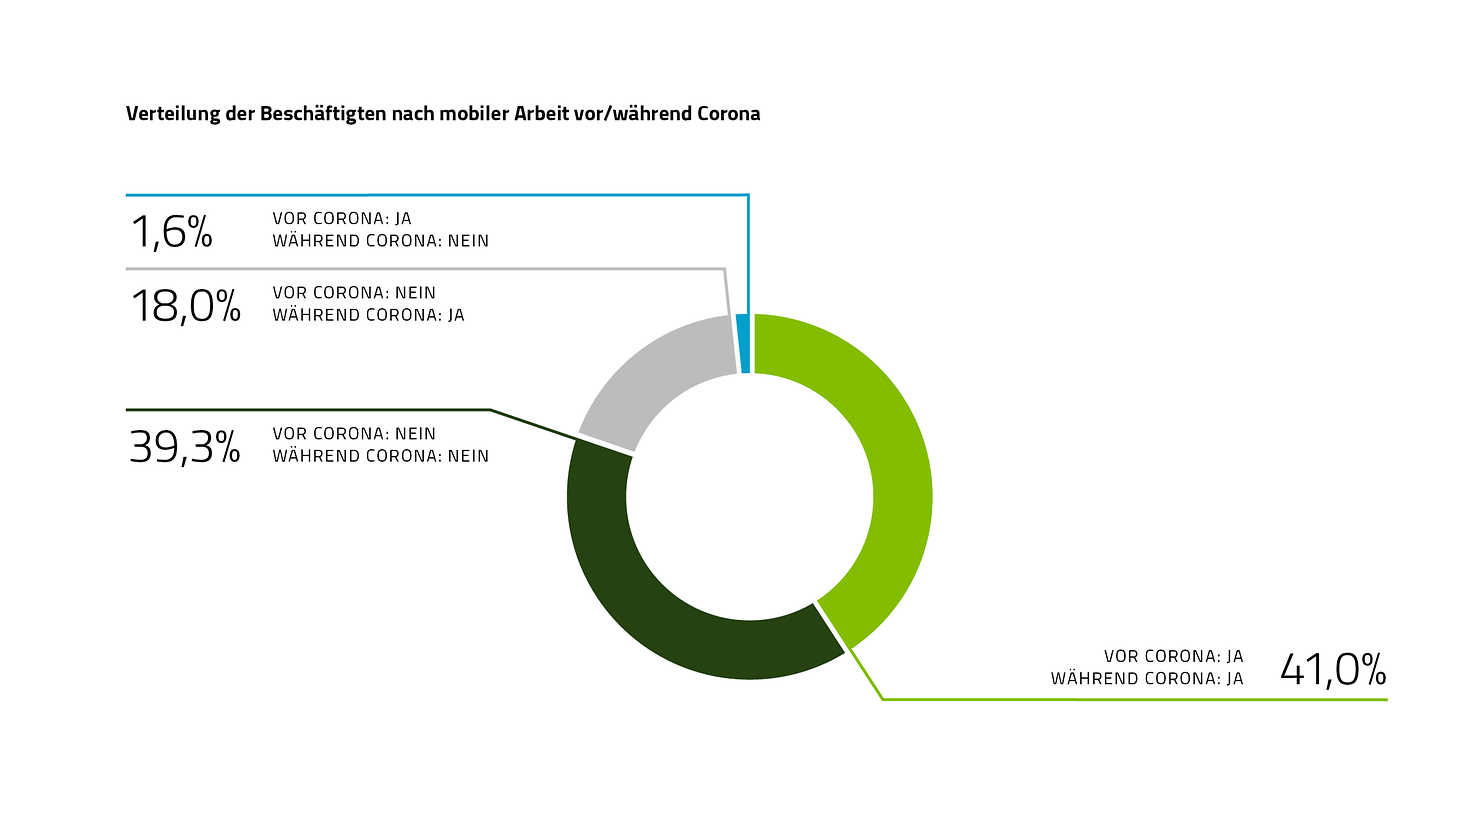 Die Grafik zeigt die Verteilung der Beschäftigten nach mobiler Arbeit vor/während Corona